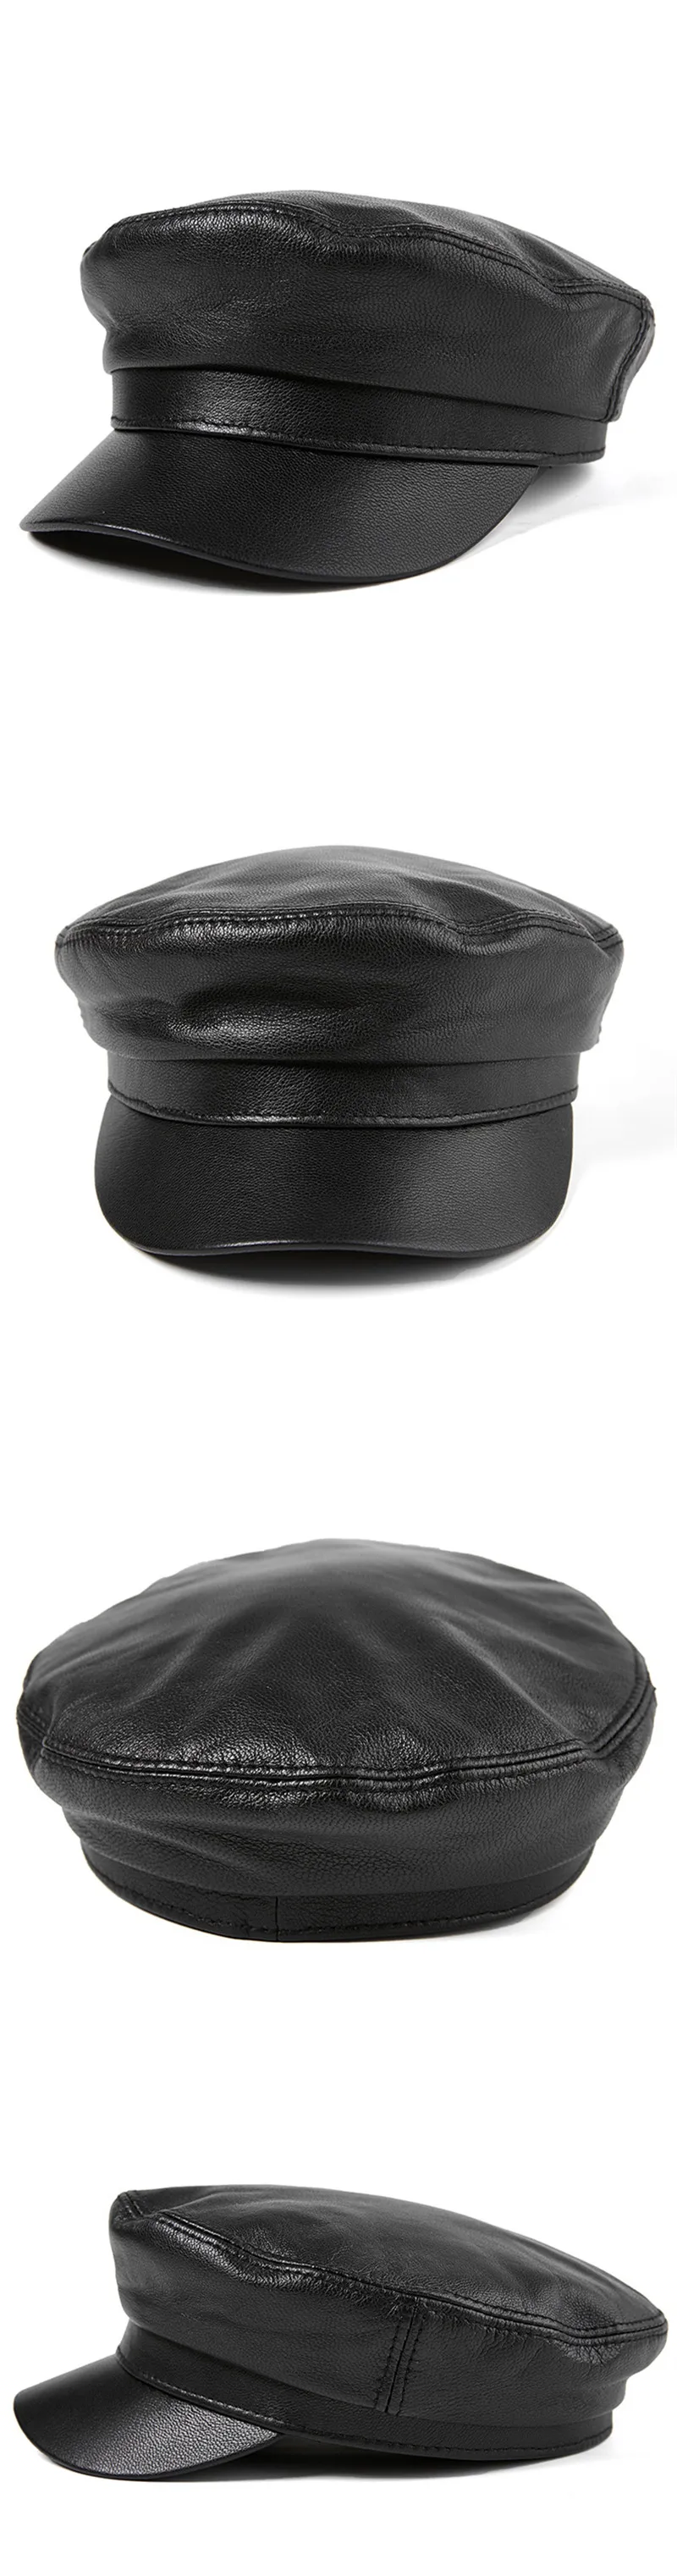 XdanqinX натуральная кожа шляпа высокого качества плоская кепка для мужчин и женщин овчина армейские военные шапки осень зима кожа бренды Кепка s